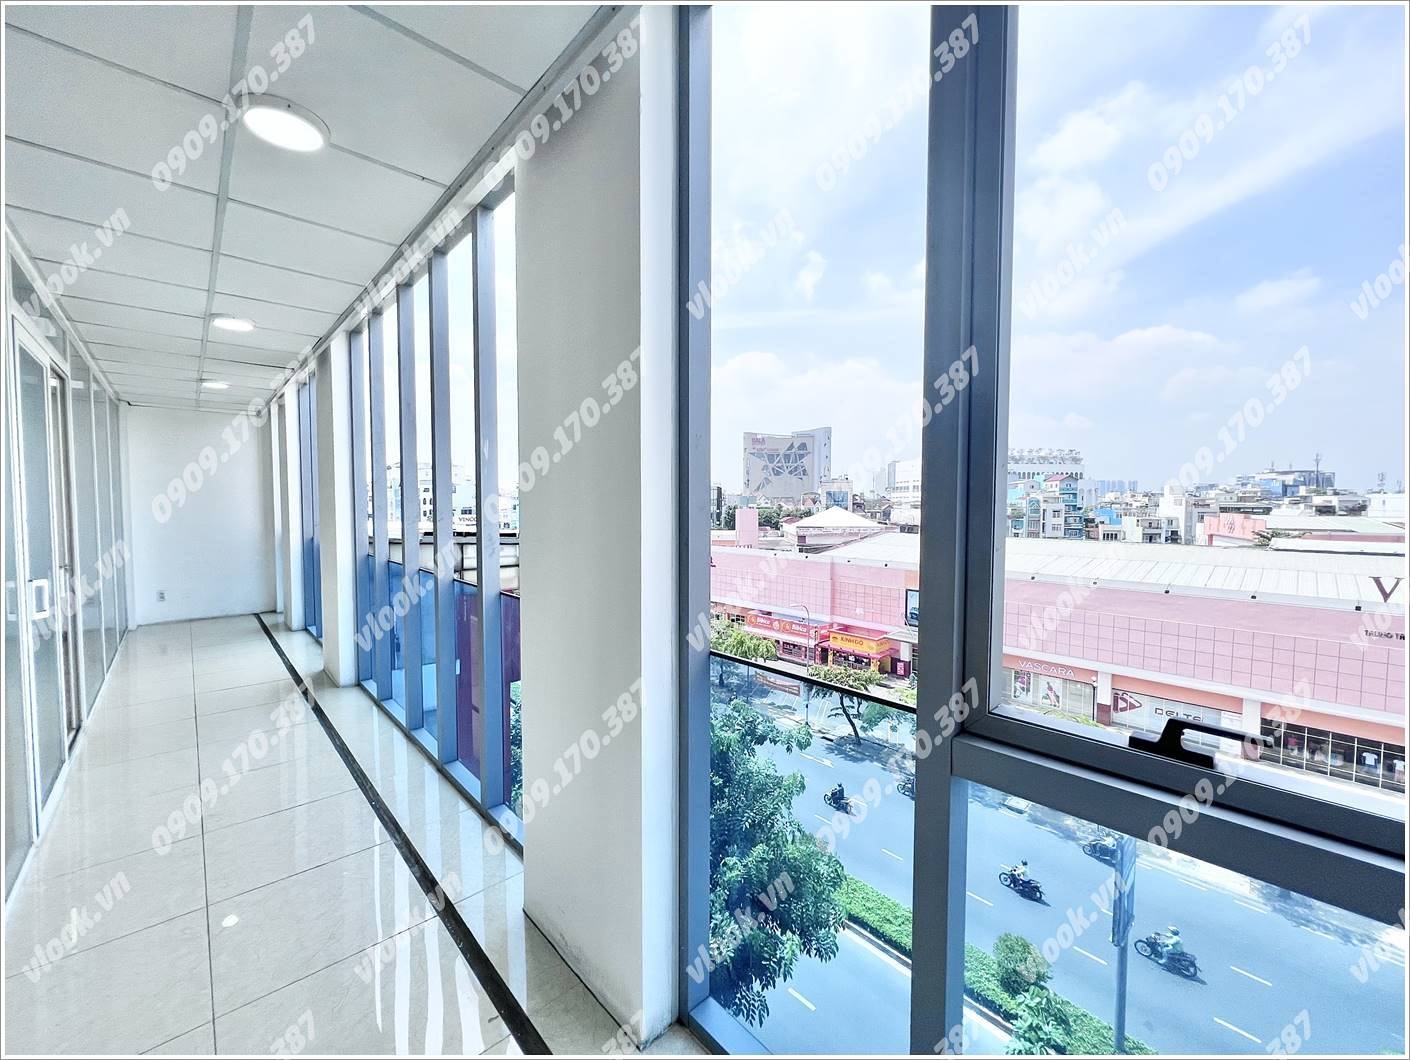 Cao ốc văn phòng cho thuê tòa nhà TSA Building 100 Cộng Hòa, Quận Tân Bình, TPHCM - vlook.vn